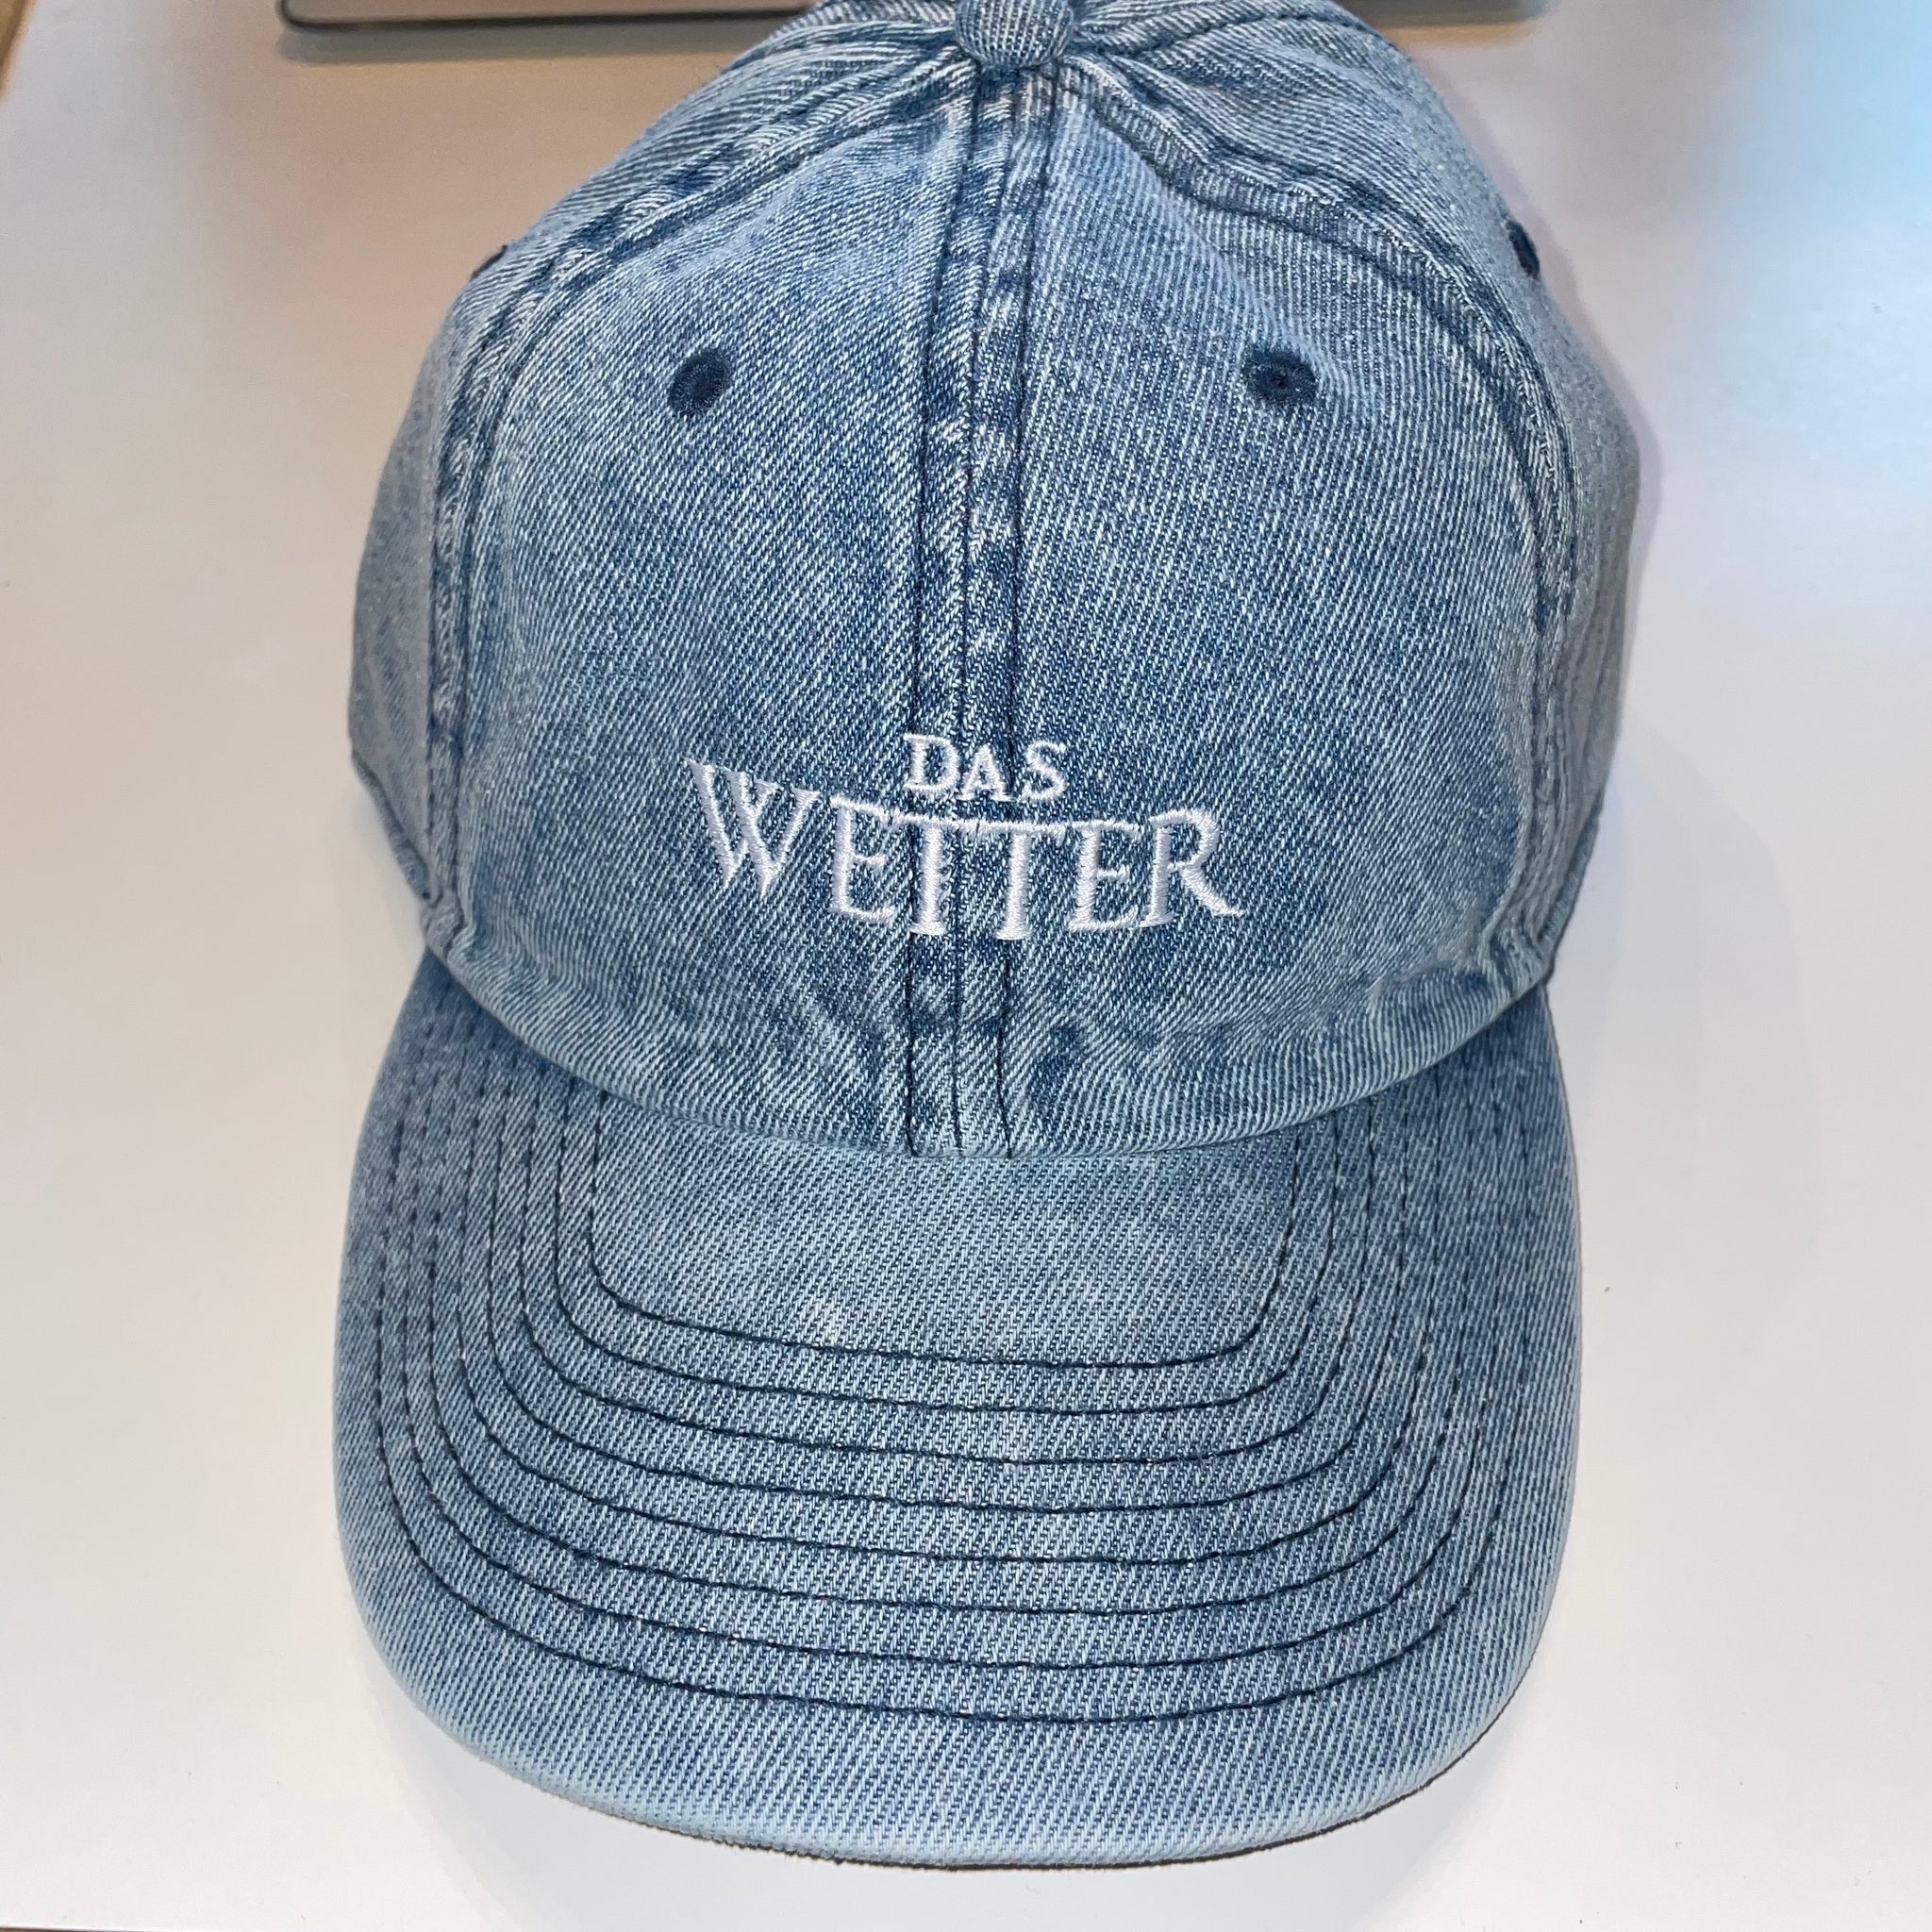 Wetter-Cap »Logo«